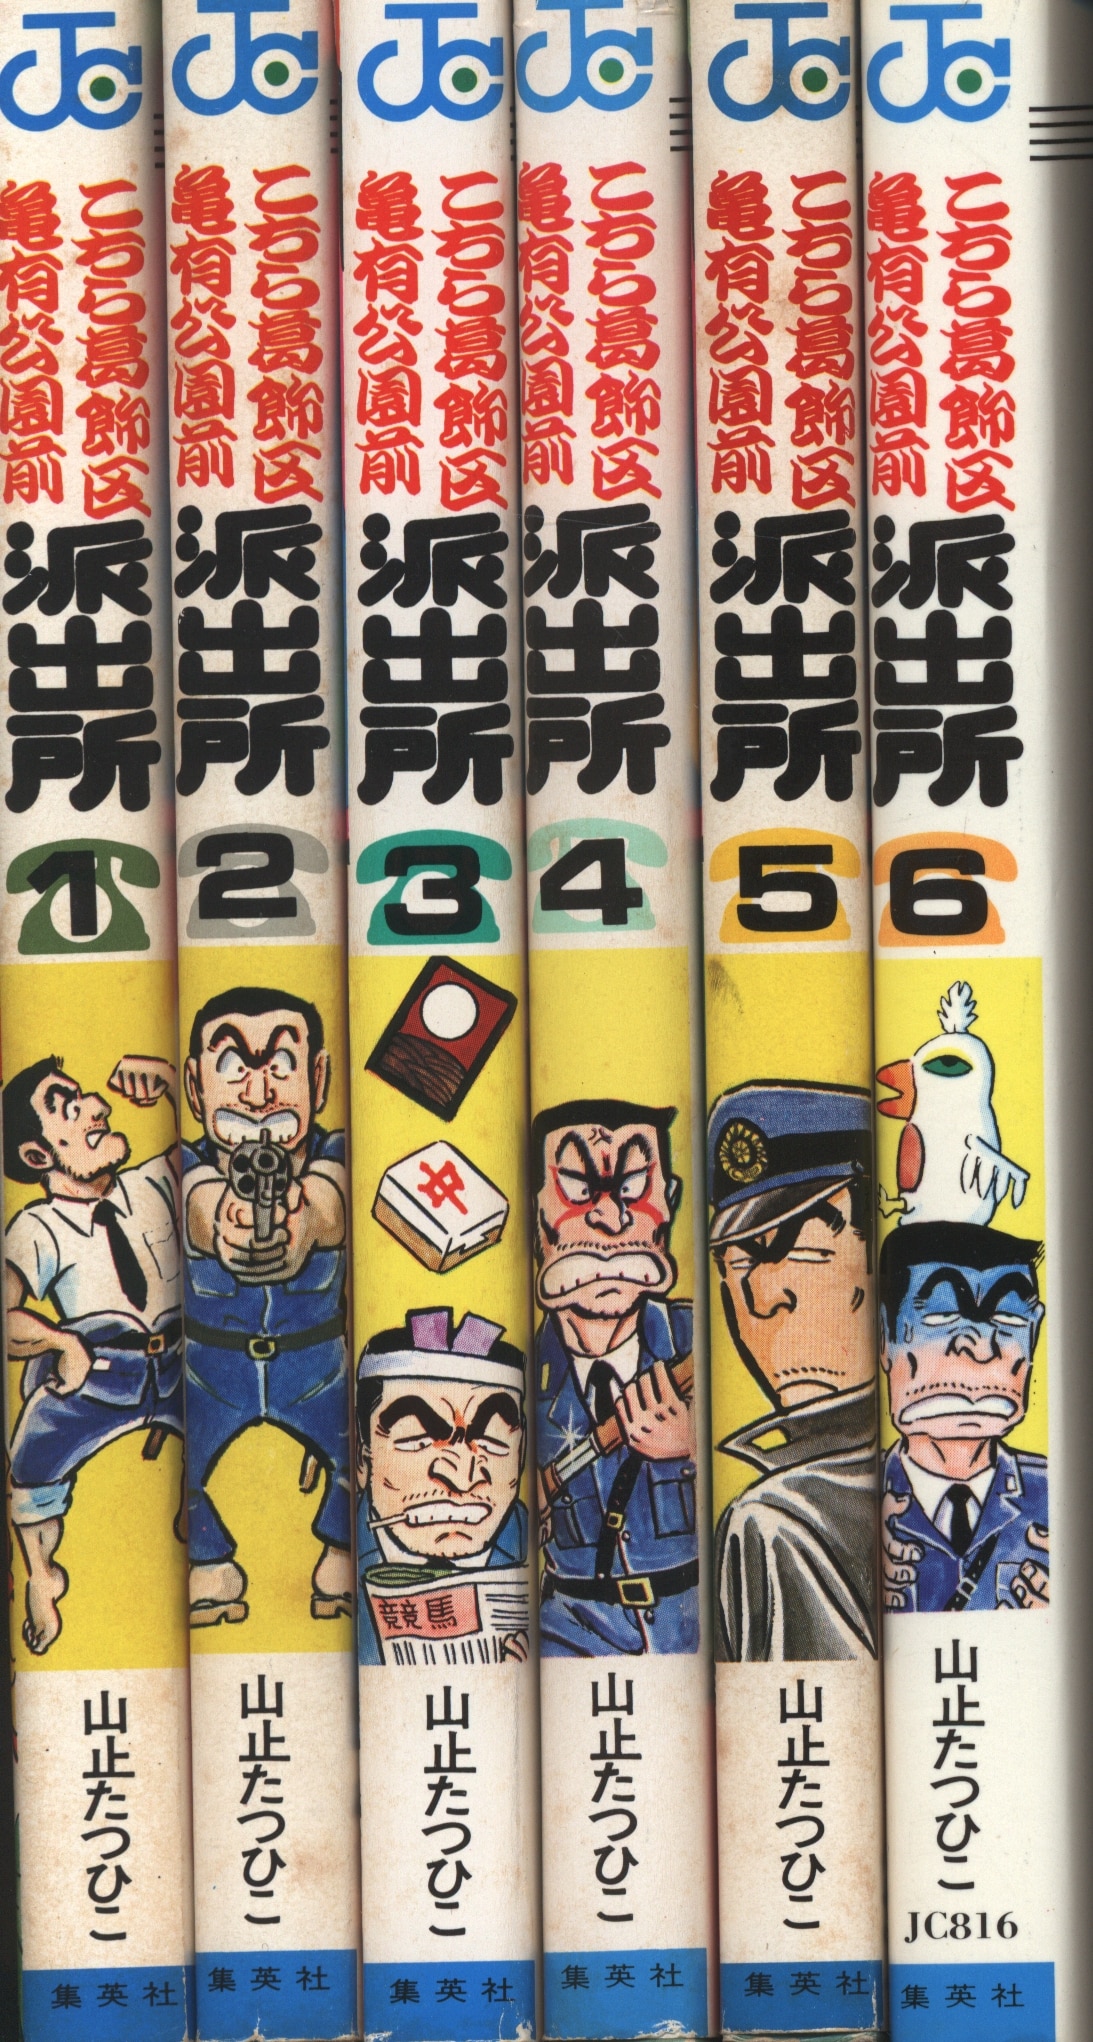 山止たつひこ こち亀 1〜6巻セット1巻以外初版 - 少年漫画